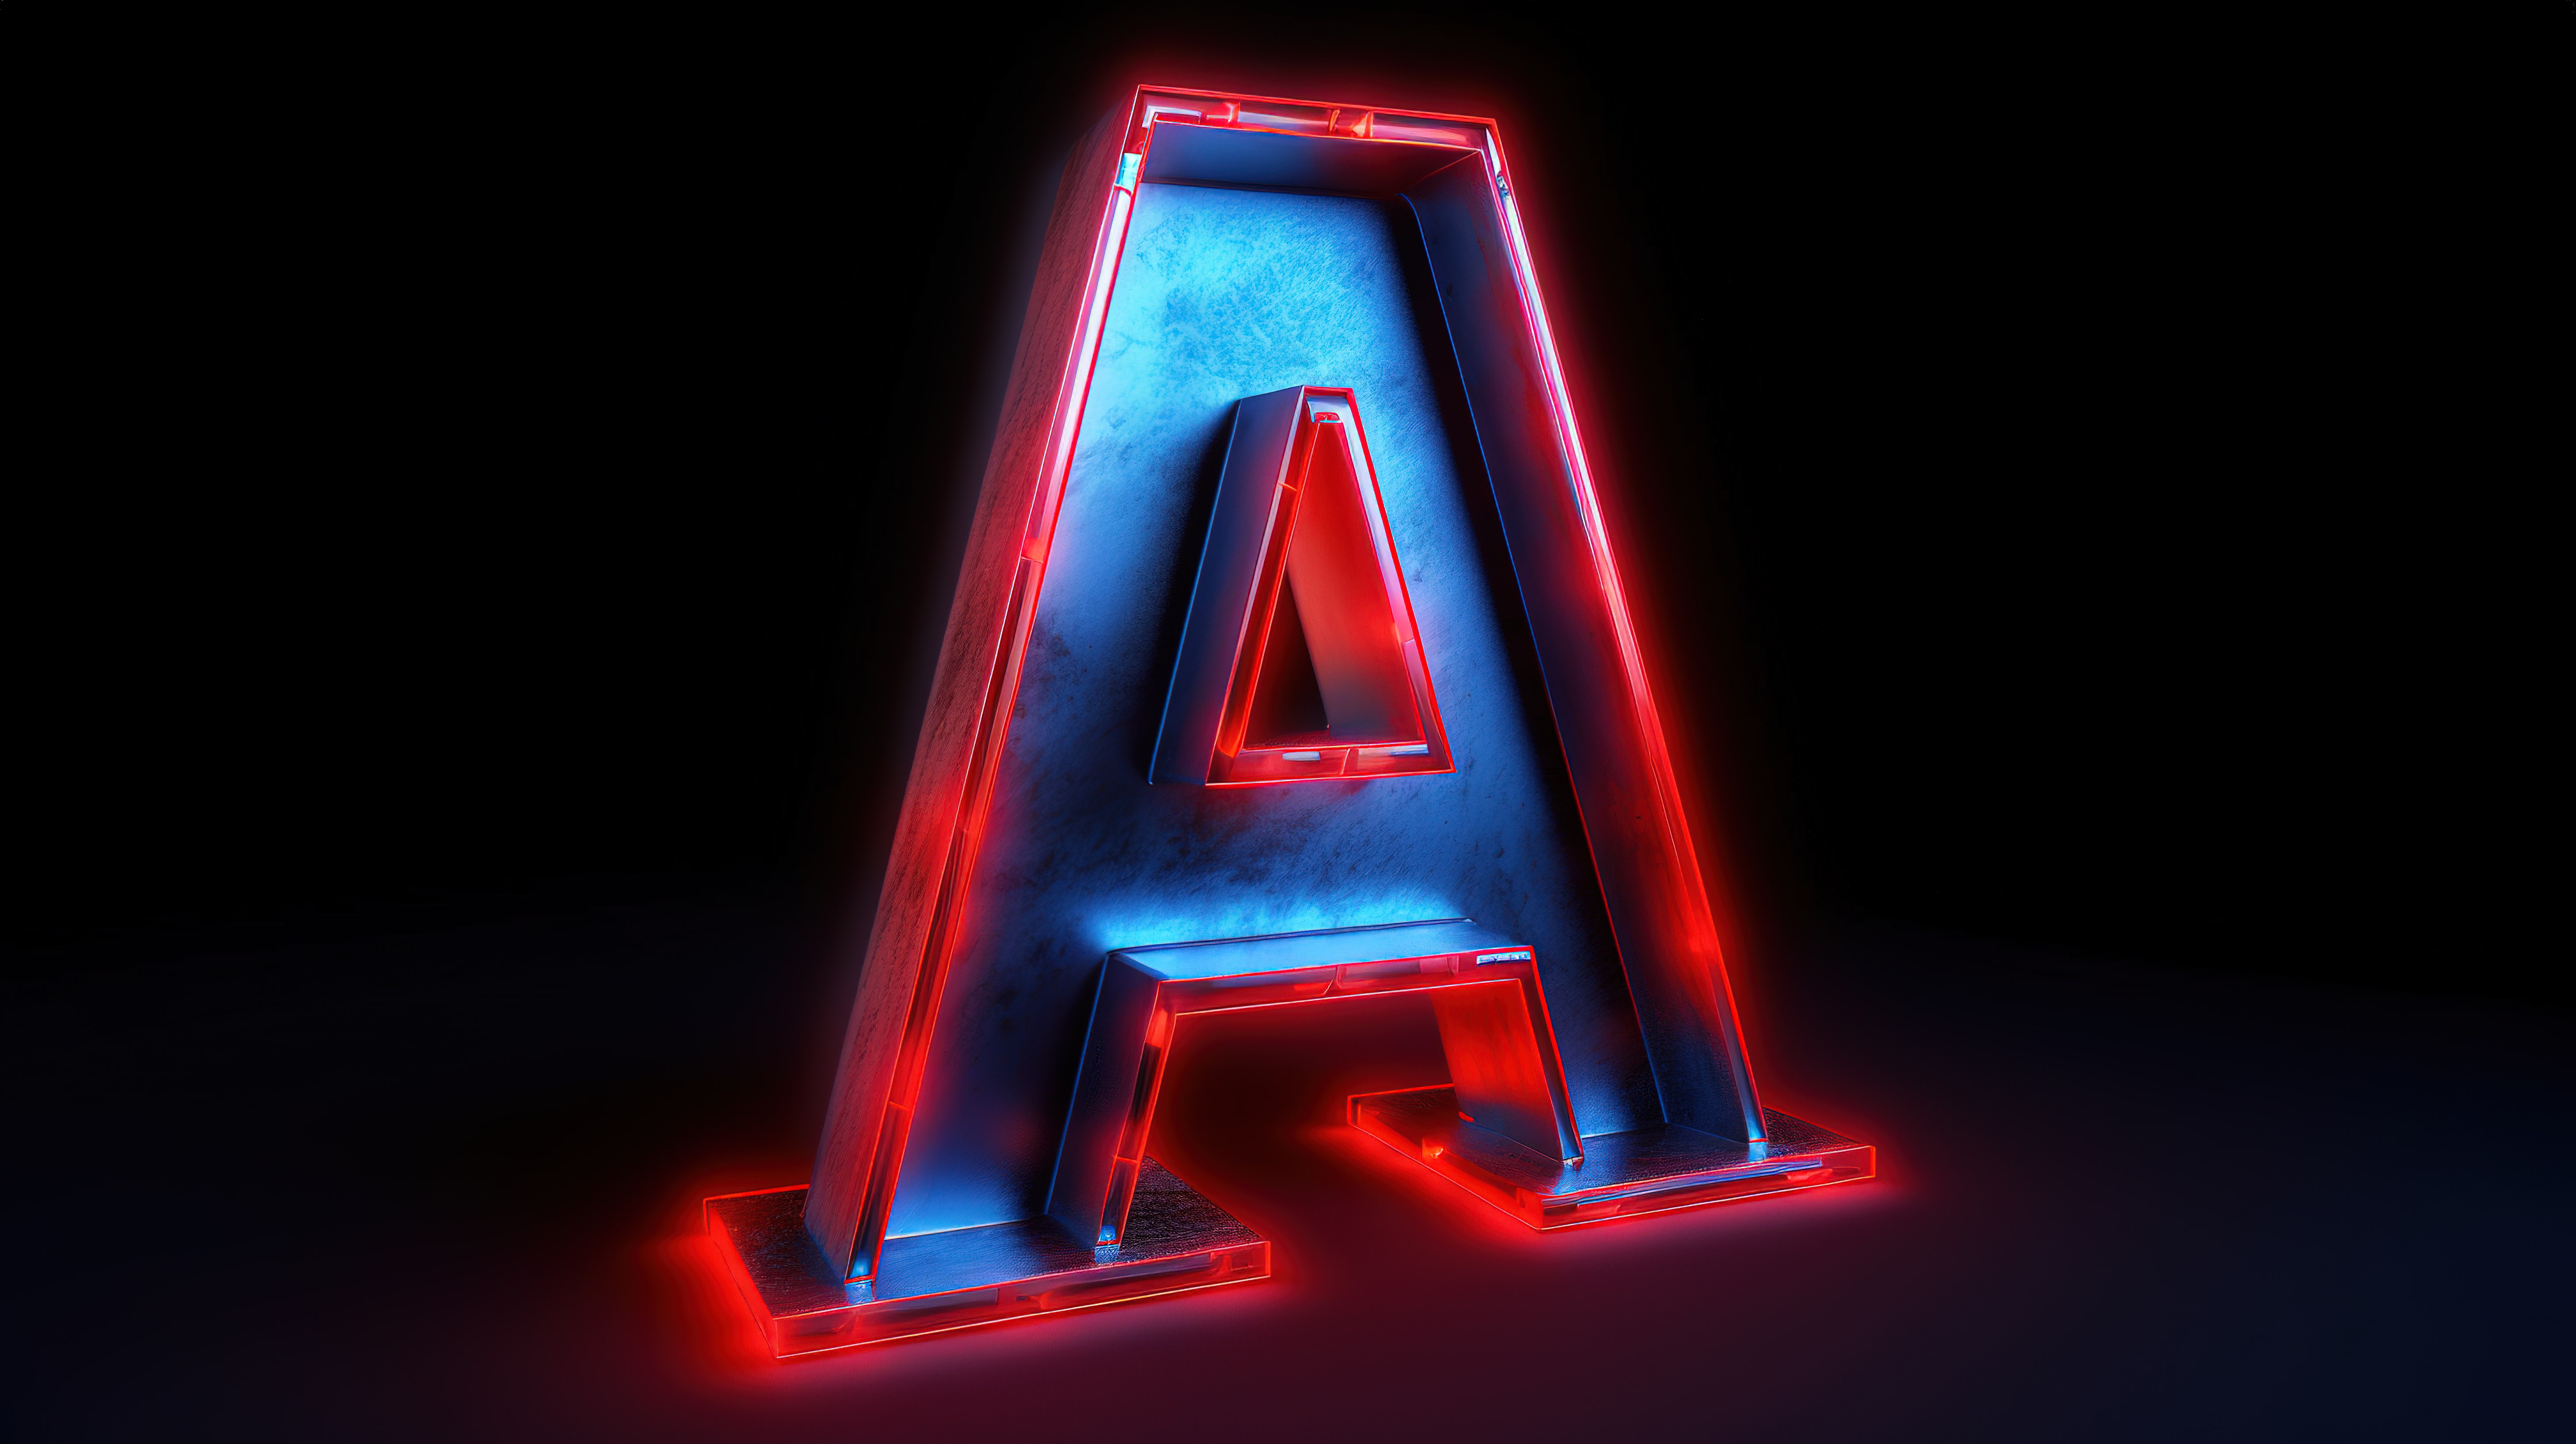 3D 渲染中带有蓝色字母背景的发光霓虹红色大写字母“a”图片